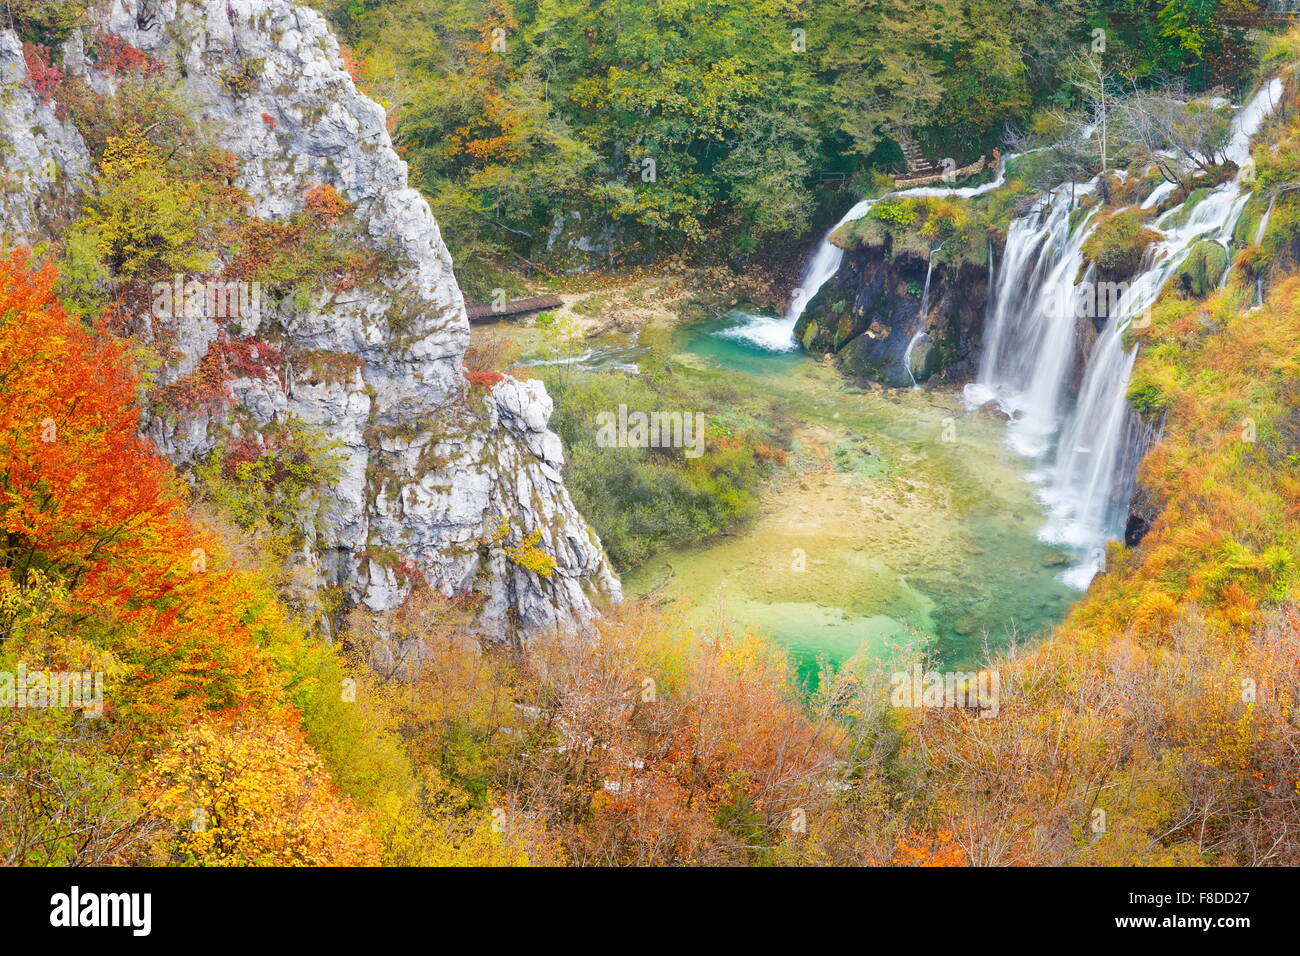 Cascades dans le parc national des Lacs de Plitvice, paysage d'automne, la Croatie, l'UNESCO Banque D'Images